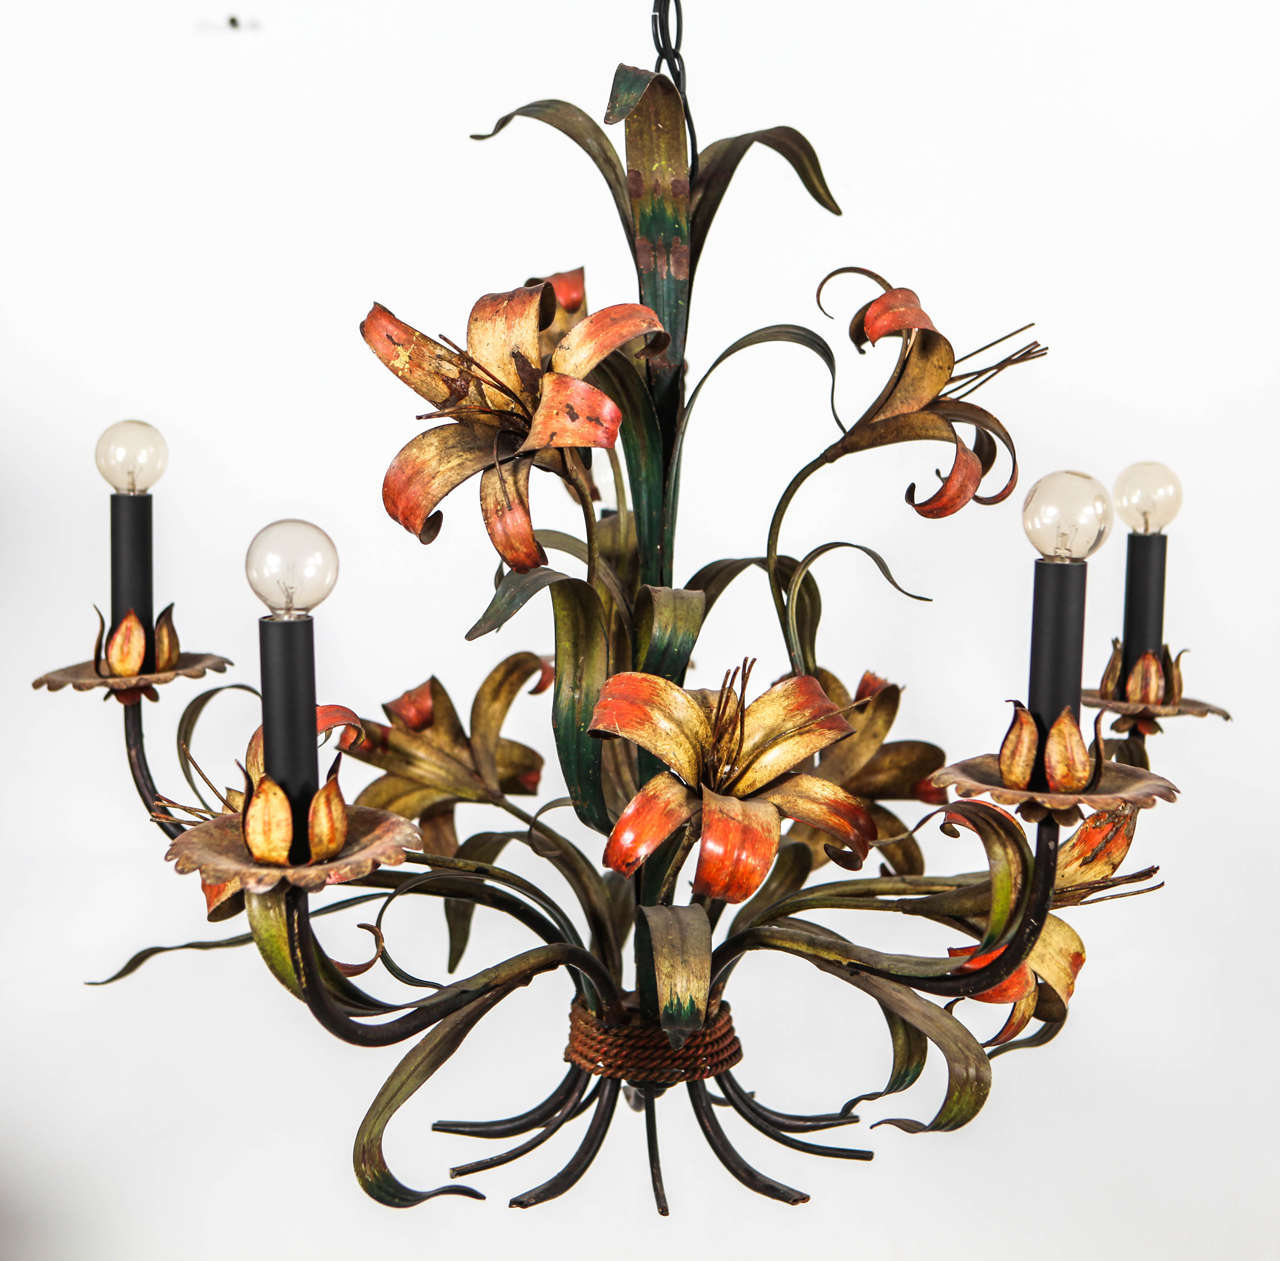 Quirky yet elegant Italian bent metal five arm flower chandelier. 36